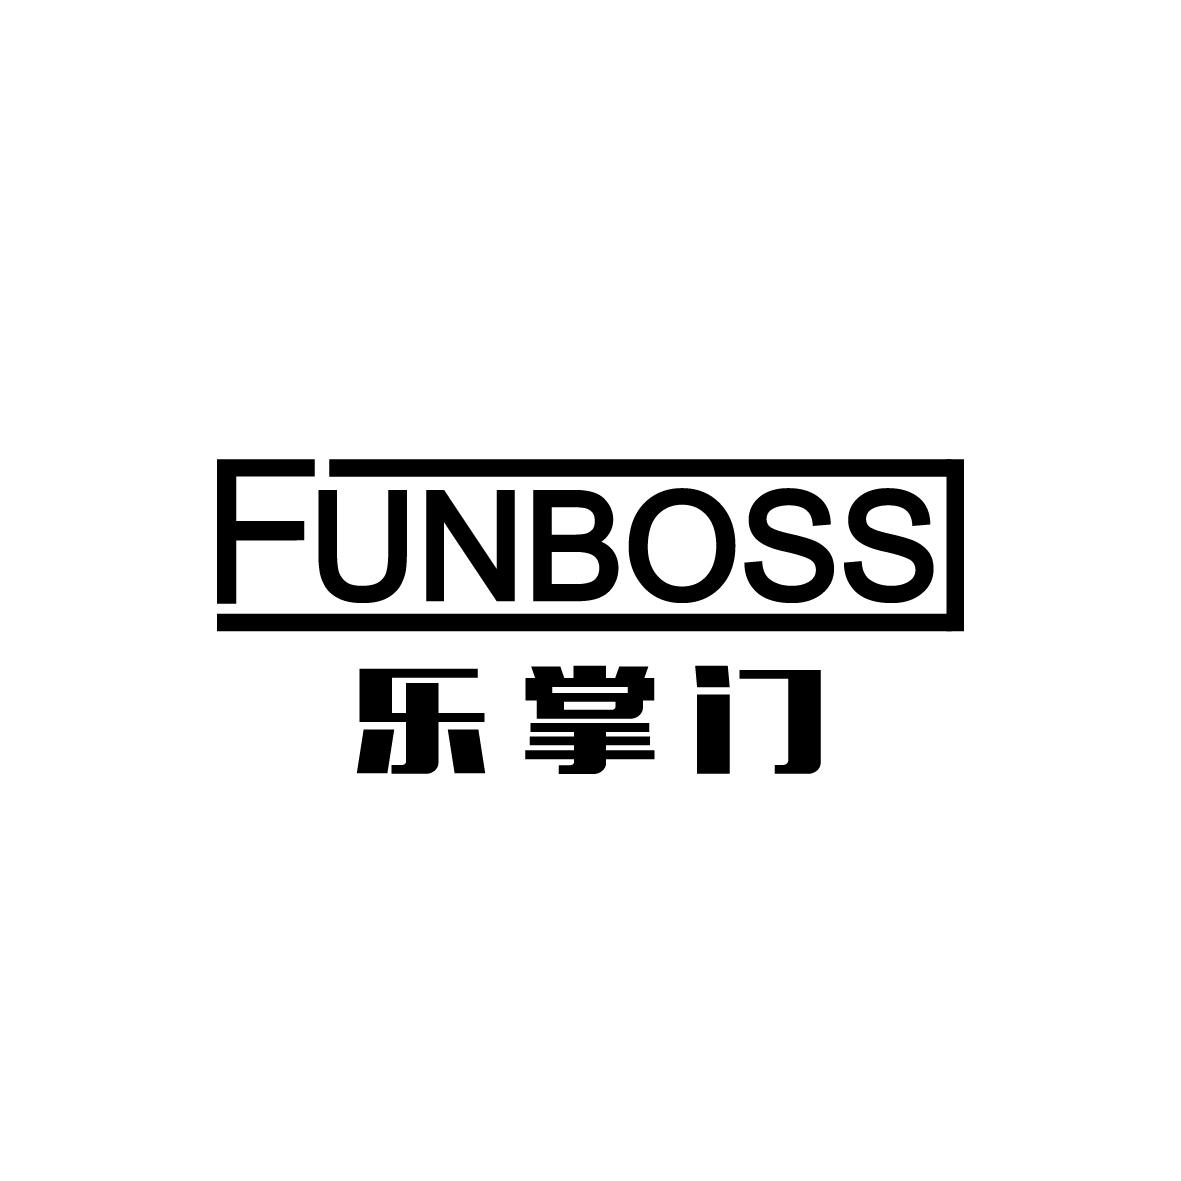  FUNBOSS